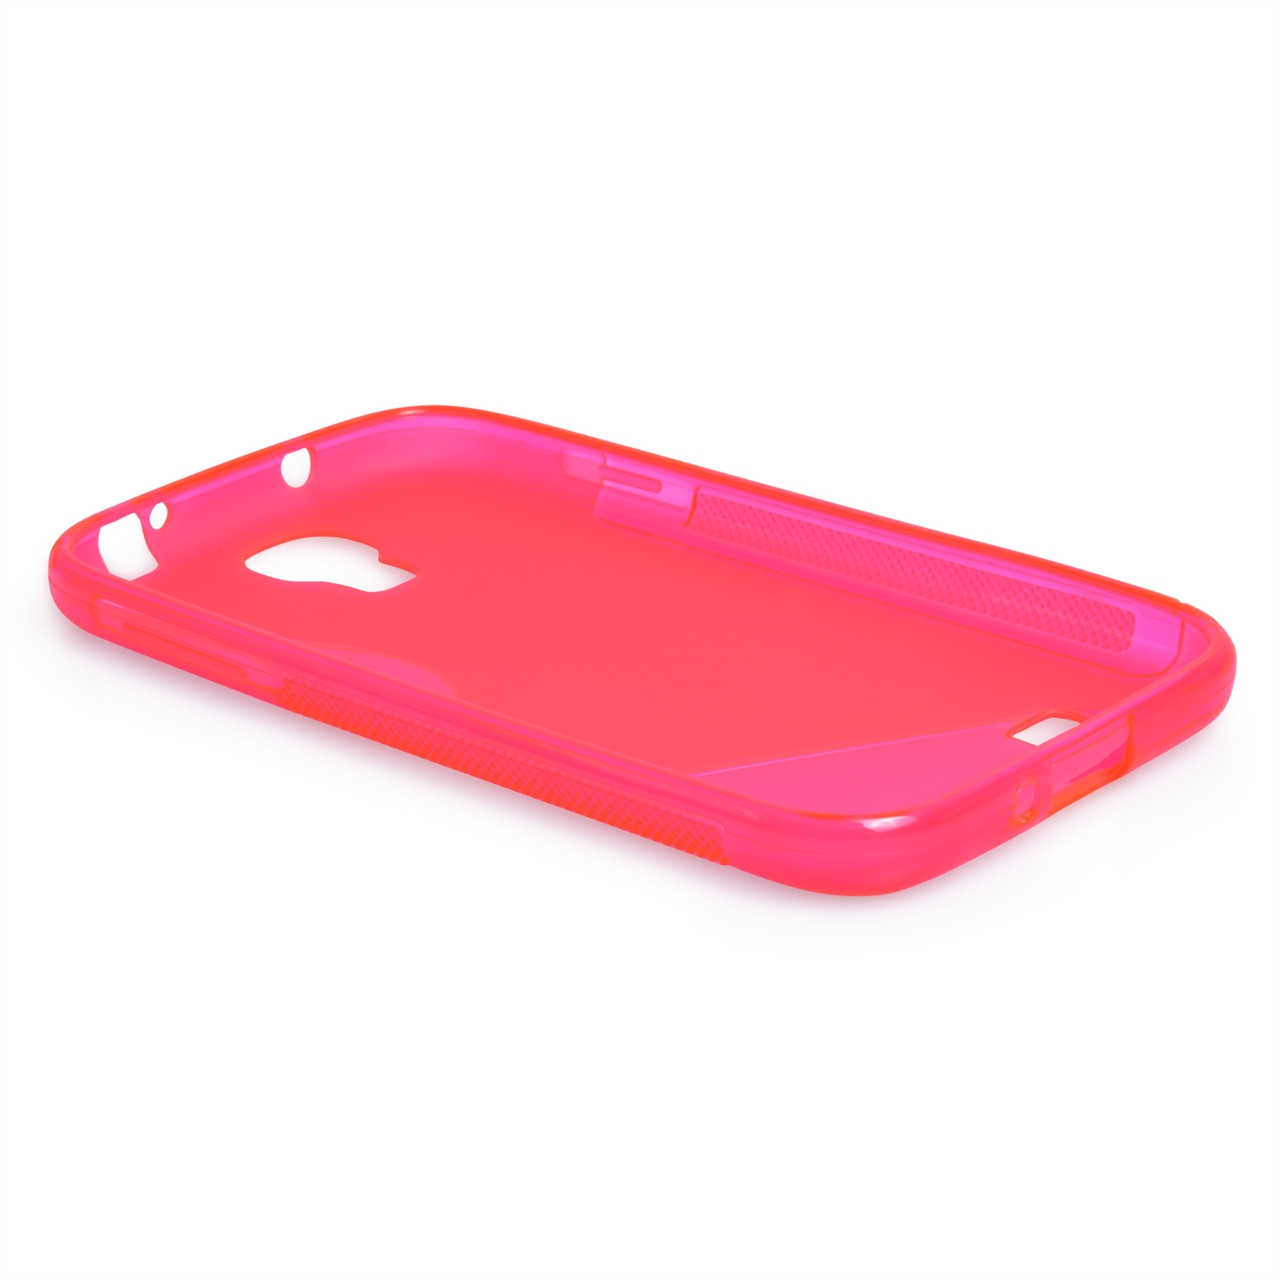 Caseflex Samsung Galaxy S4 S-Line Case - Hot Pink